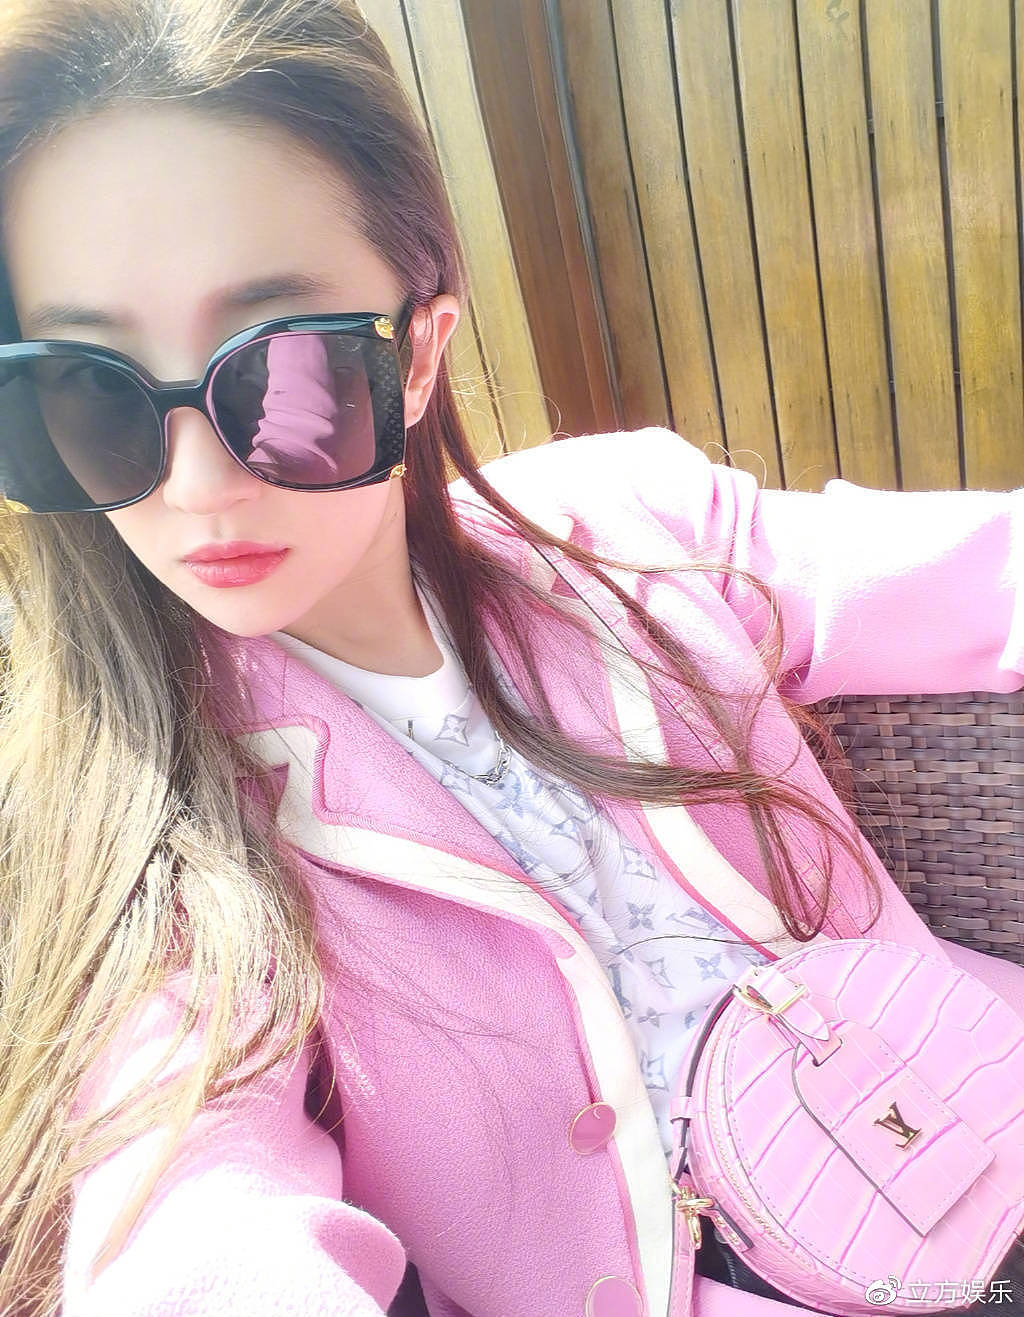 刘亦菲分享自拍美照 戴墨镜穿粉色外套甜美酷飒 - 2